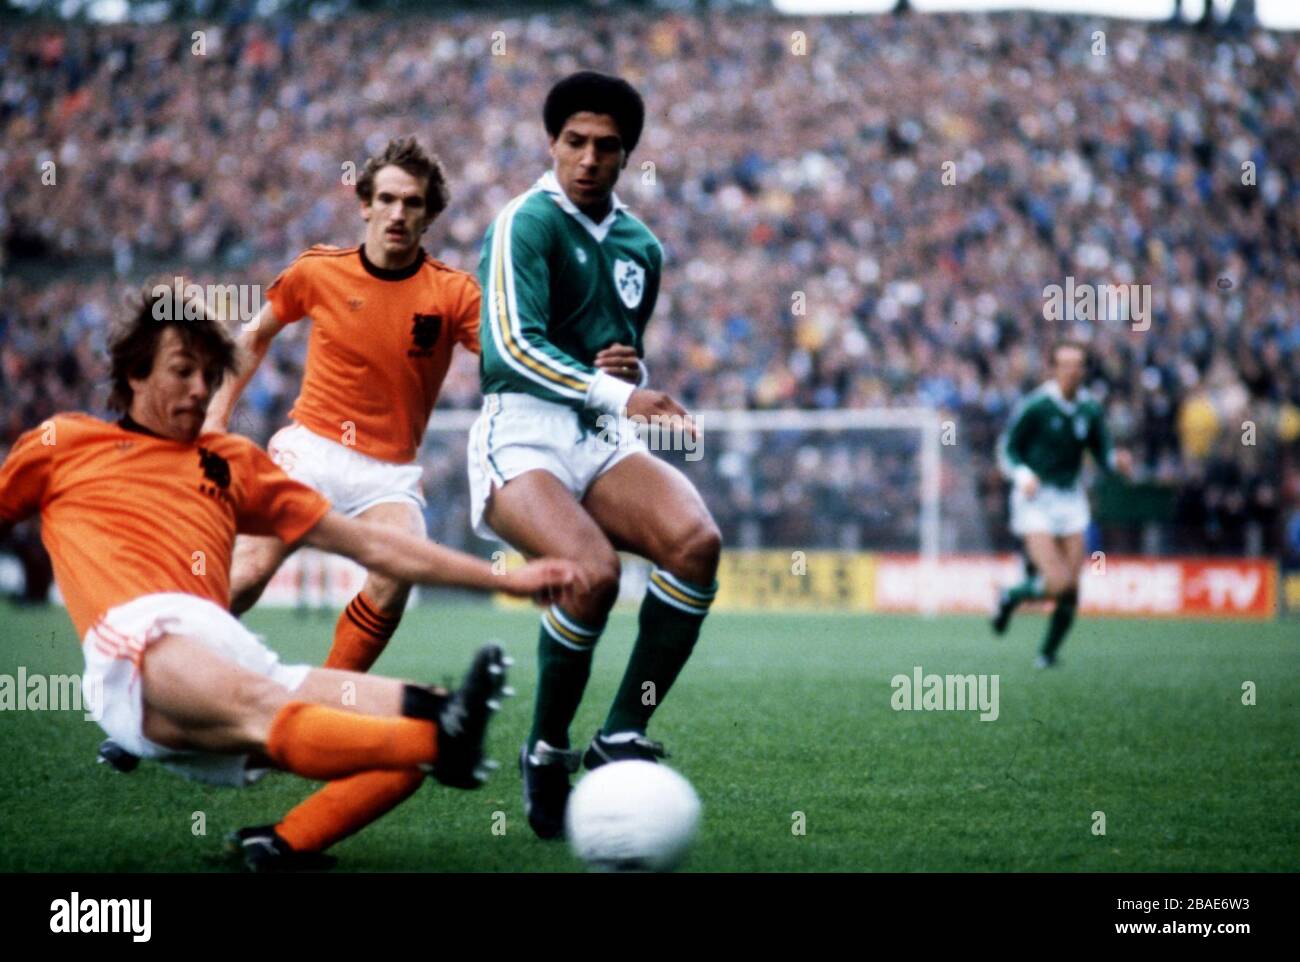 Hollands Ben Wijnstekers (l) streckt sich, um den Ball zu erreichen, beobachtet von Irlands Chris Hughton (r) Stockfoto